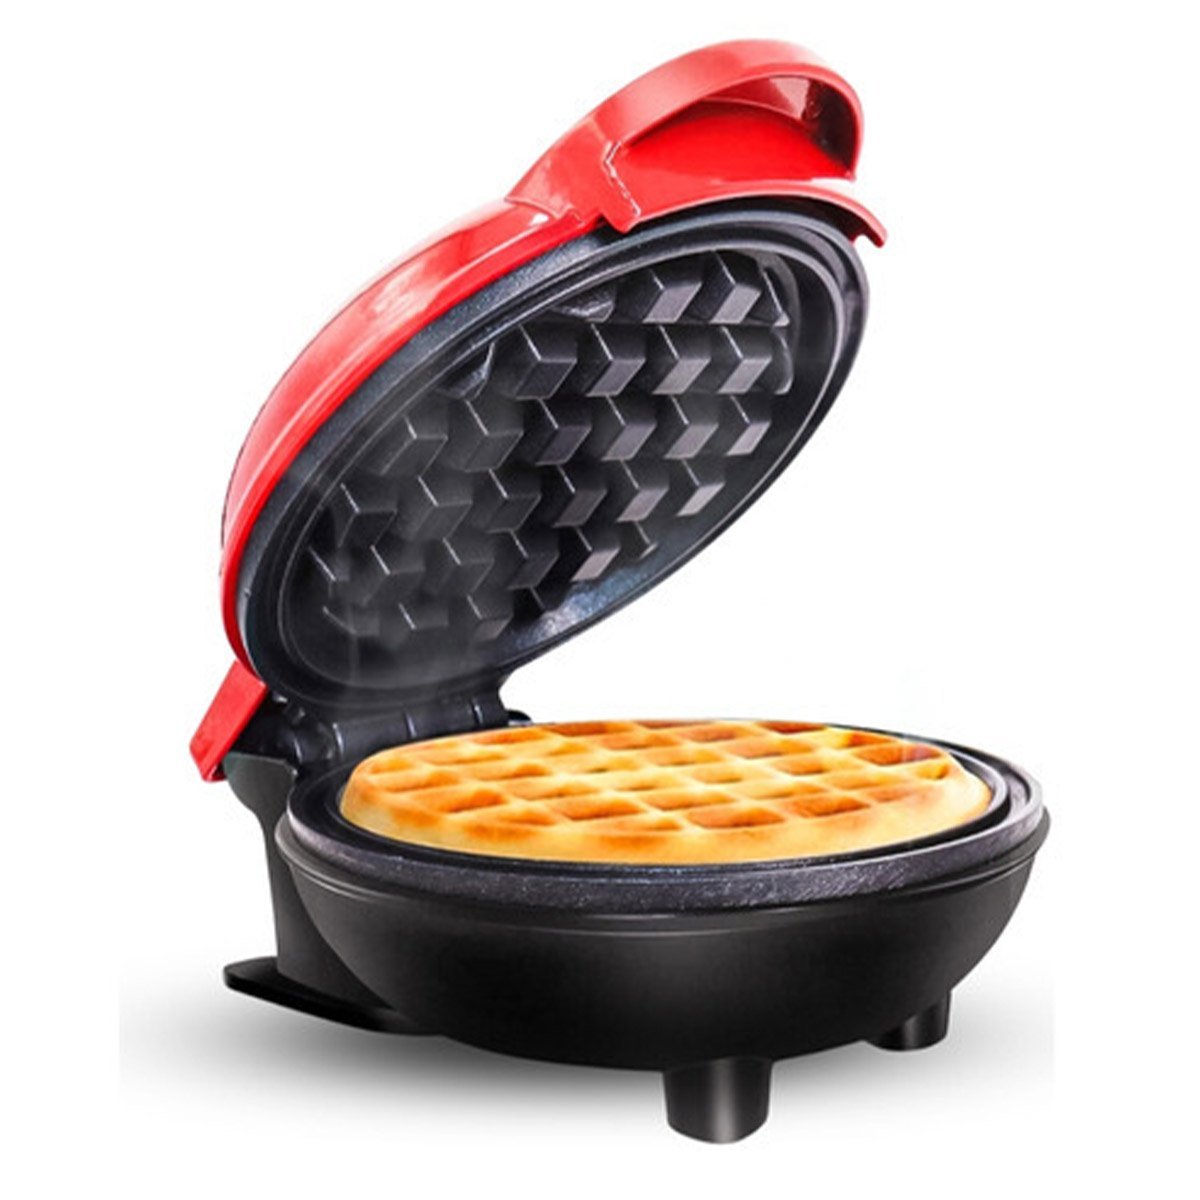 Mini Maquina de Waffles Cafe da Manha Panqueca Lanche Refeiçao Cozinha Portatil Placa Antiaderente A - 3